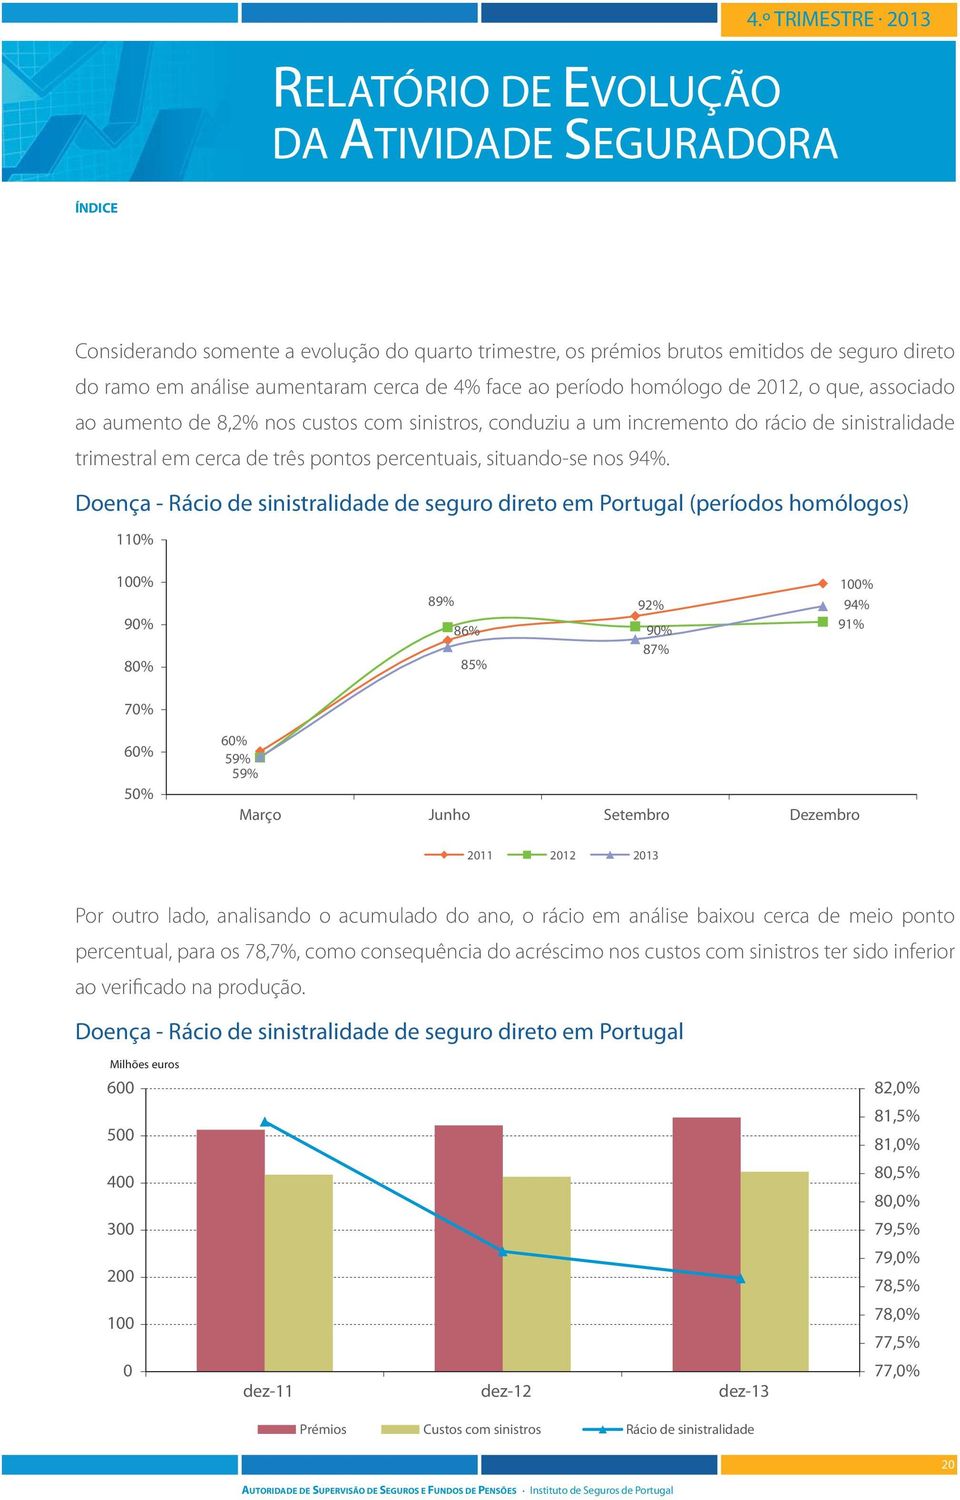 Doença - Rácio de sinistralidade de seguro direto em Portugal (períodos homólogos) 11% 1% 9% 8% 89% 86% 85% 92% 9% 87% 1% 94% 91% 7% 6% 5% 6% 59% 59% Março Junho Setembro Dezembro 211 212 213 Por